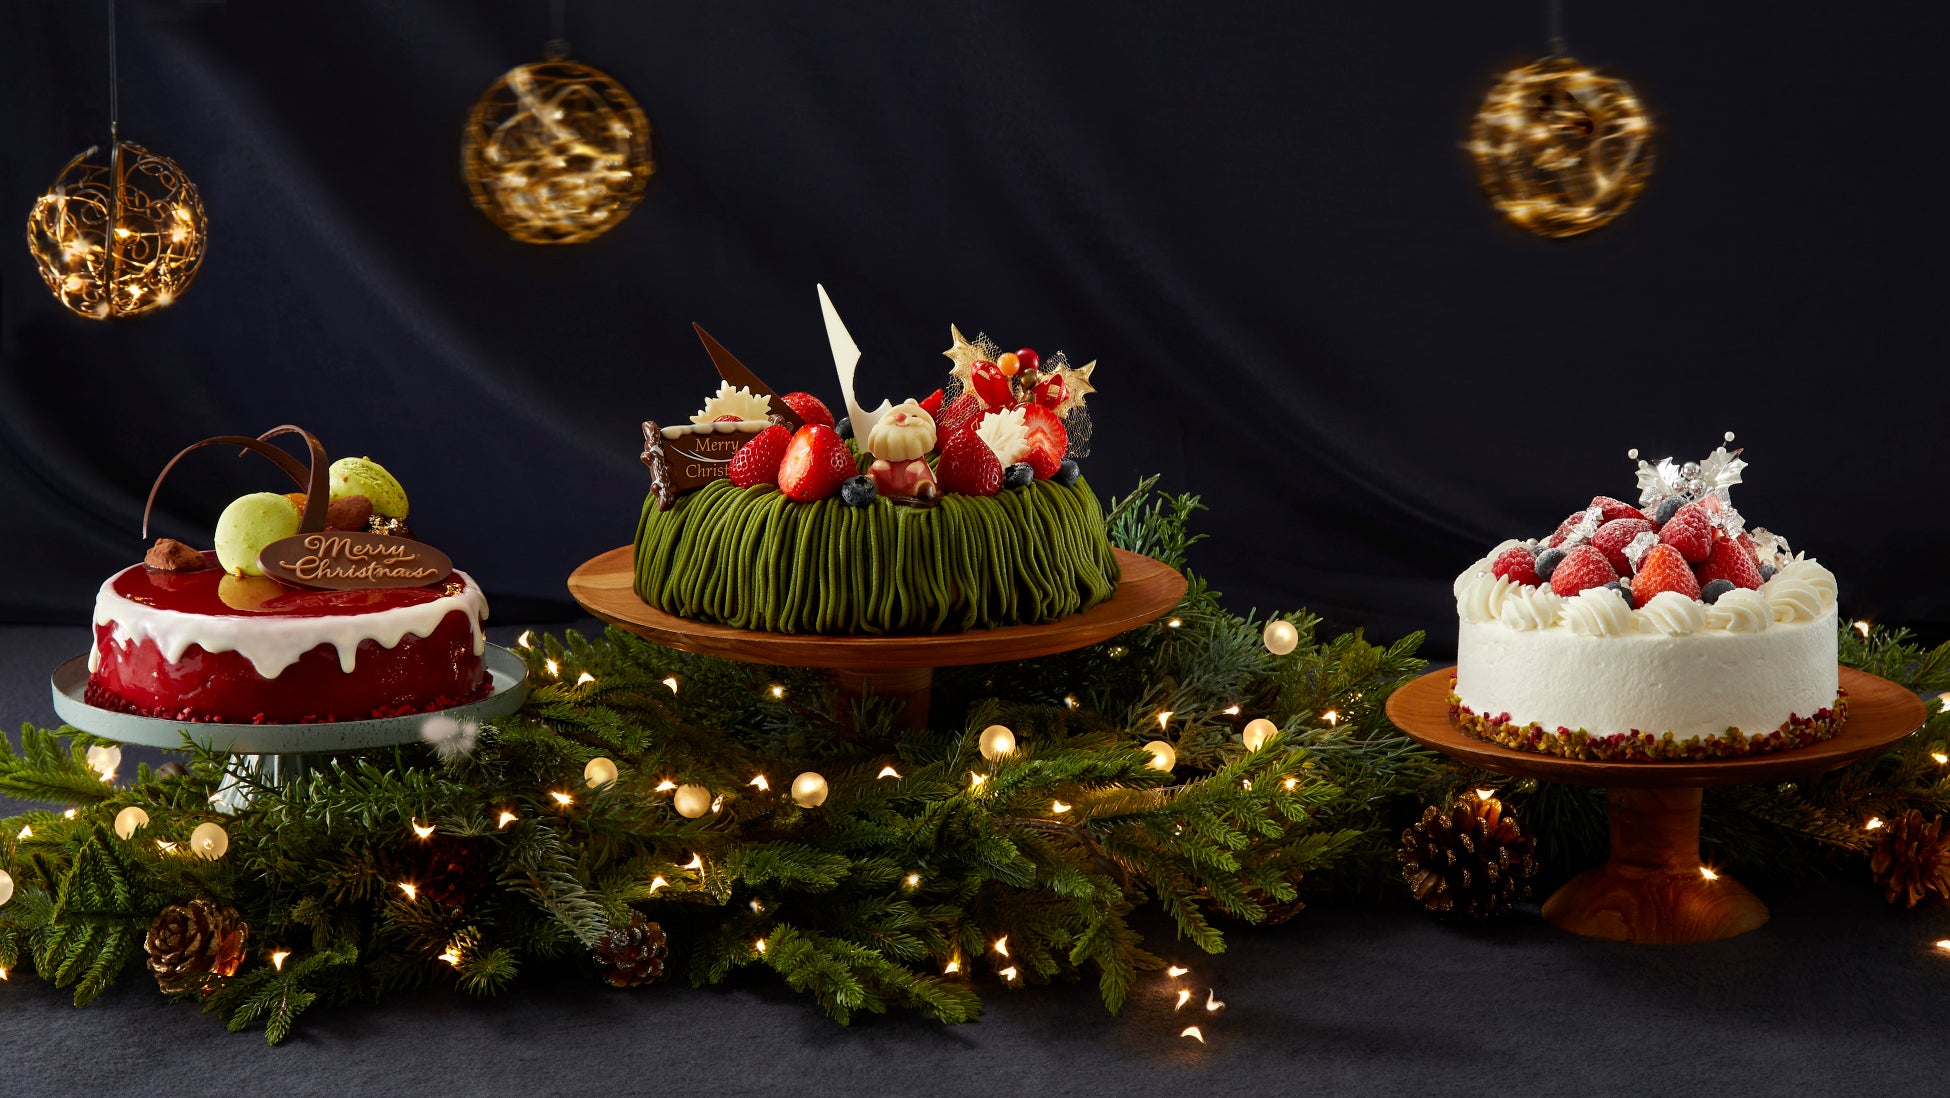 川越名産品「河越抹茶」のグリーンと艶やかなレッドでパーティーが華やかに！みんなで楽しむクリスマスケーキを販売